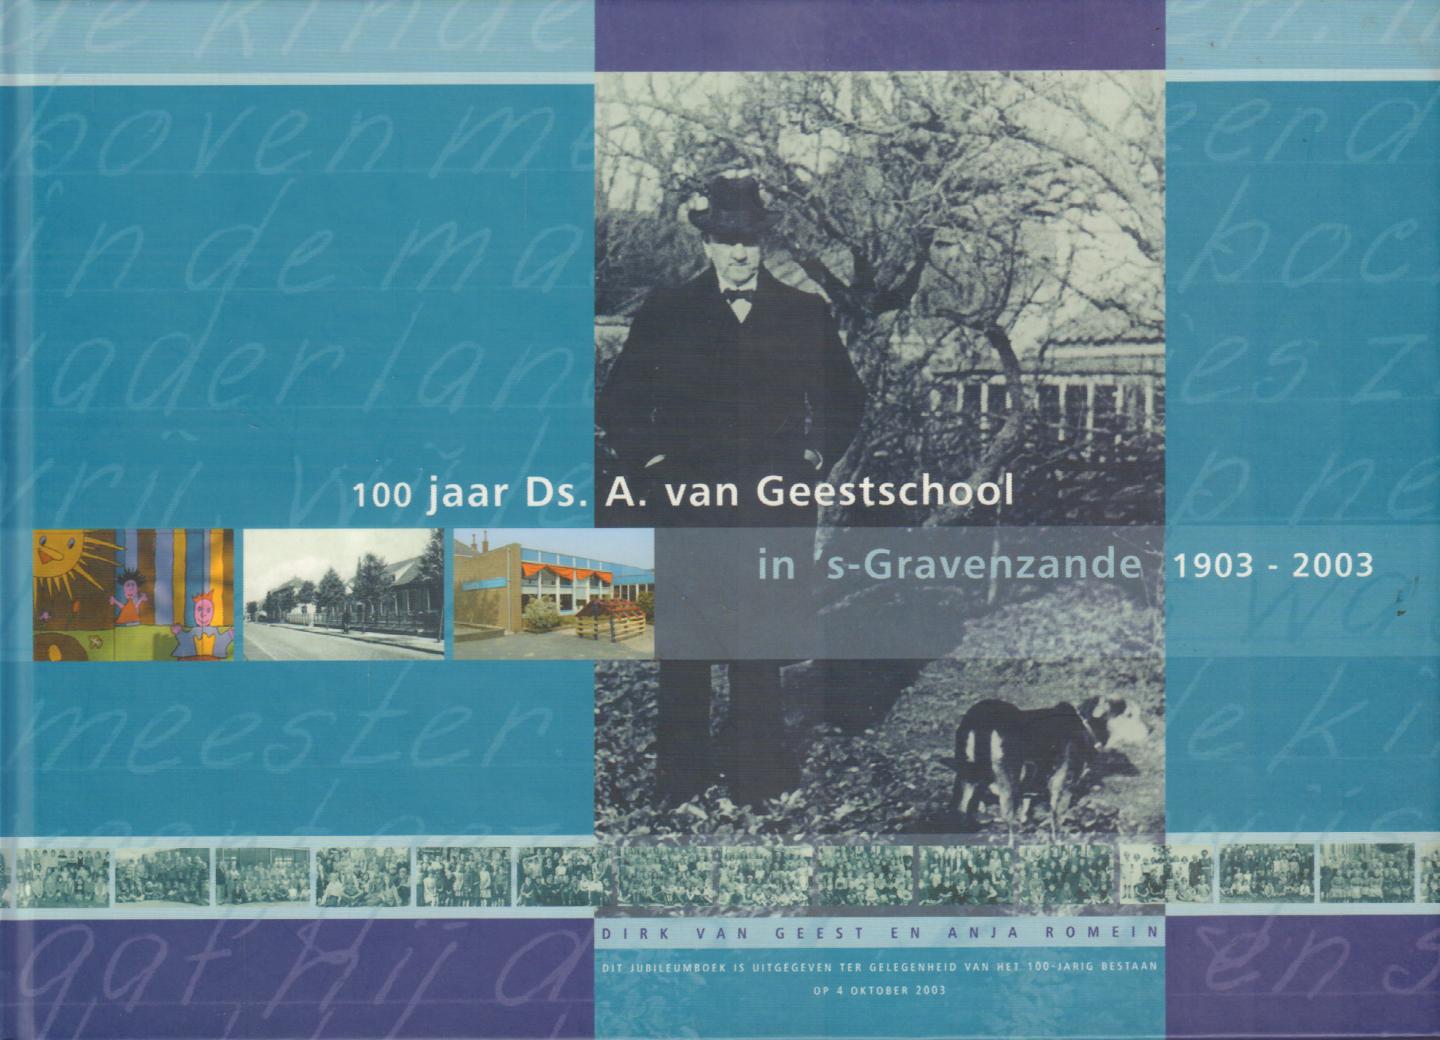 Geest, Dirk van en Anja Romeijn - 100 Jaar Ds. A. van Geestschool in 's-Gravenzande 1903-2003, 100 pag. kleine hardcover, gave staat (nieuwstaat)